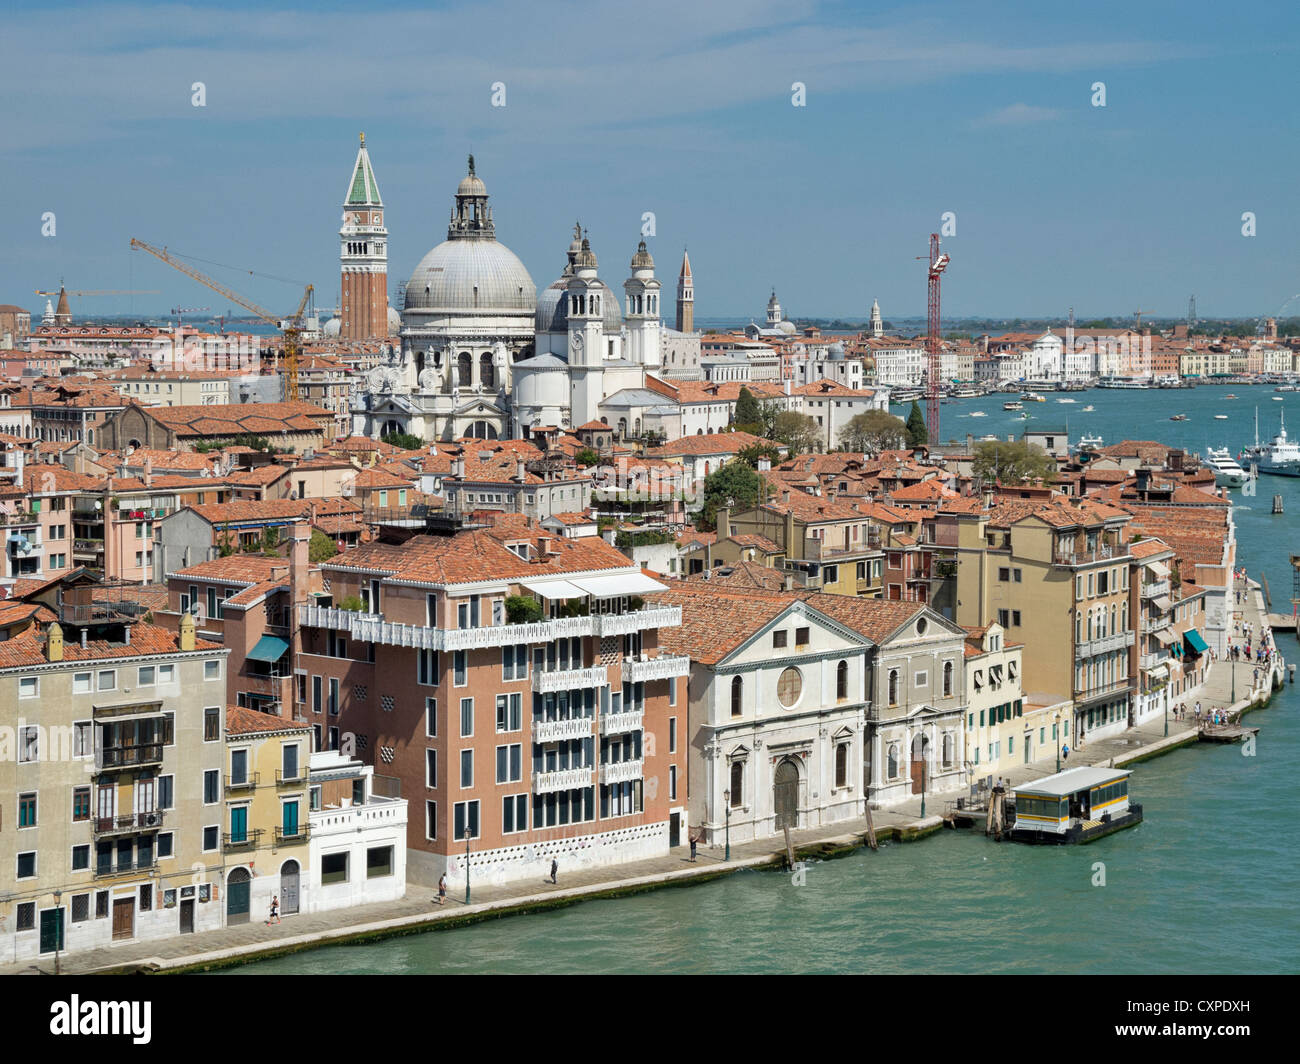 View of Venice showing Torre Dell'Orologio, Accademia di Belle Arti di Venezia and Condominio Spirito Santo Stock Photo